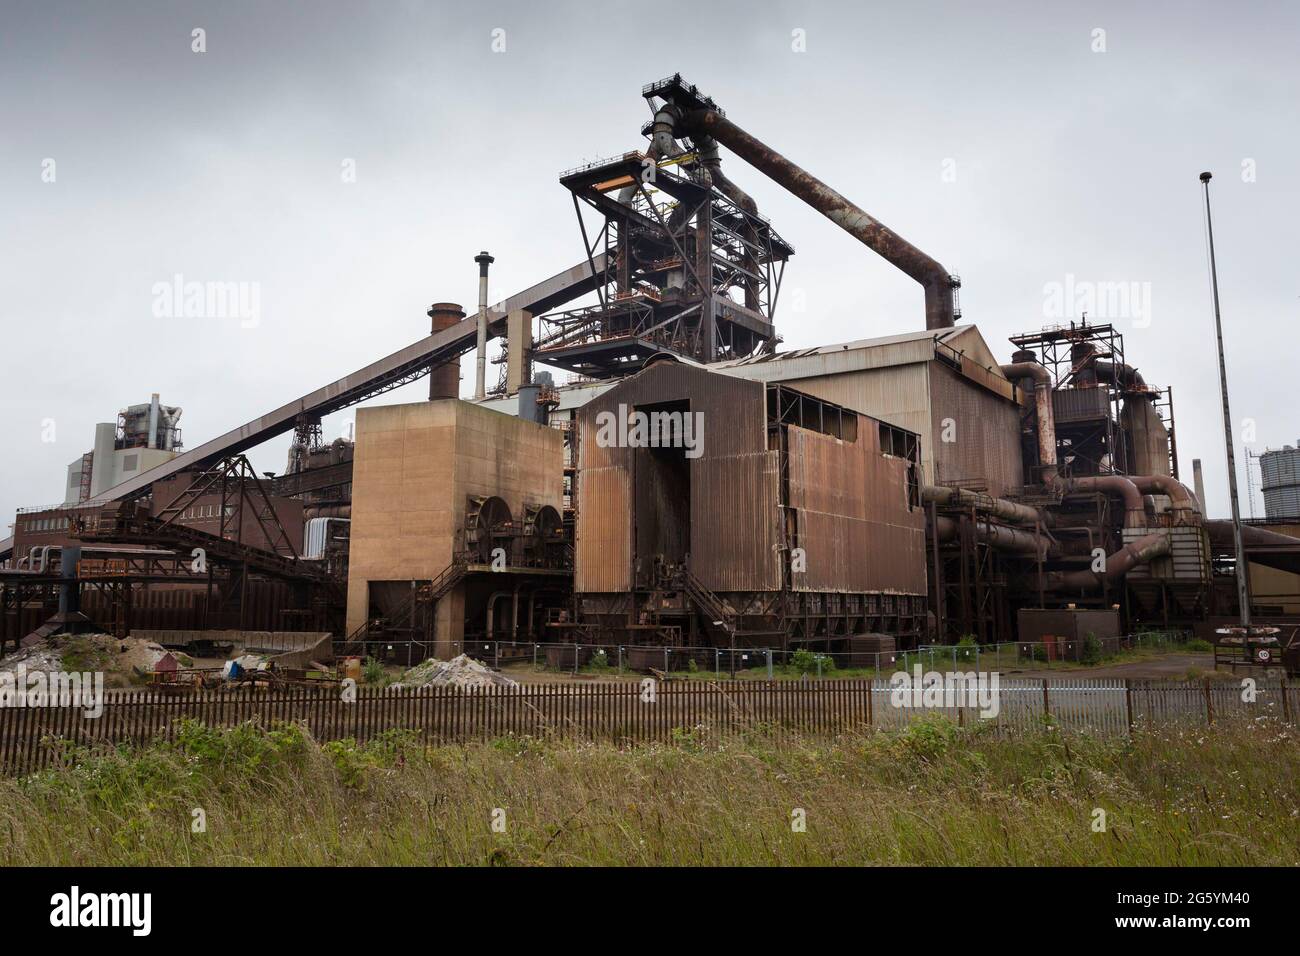 Das Werk von British Steel in Redcar in Cleveland, Mittwoch, 30. Juni 2021. Die Produktion des Werks wurde 2015 eingestellt und soll 2022 komplett abgerissen werden. Quelle: Paul Thompson/Alamy Live News. Stockfoto